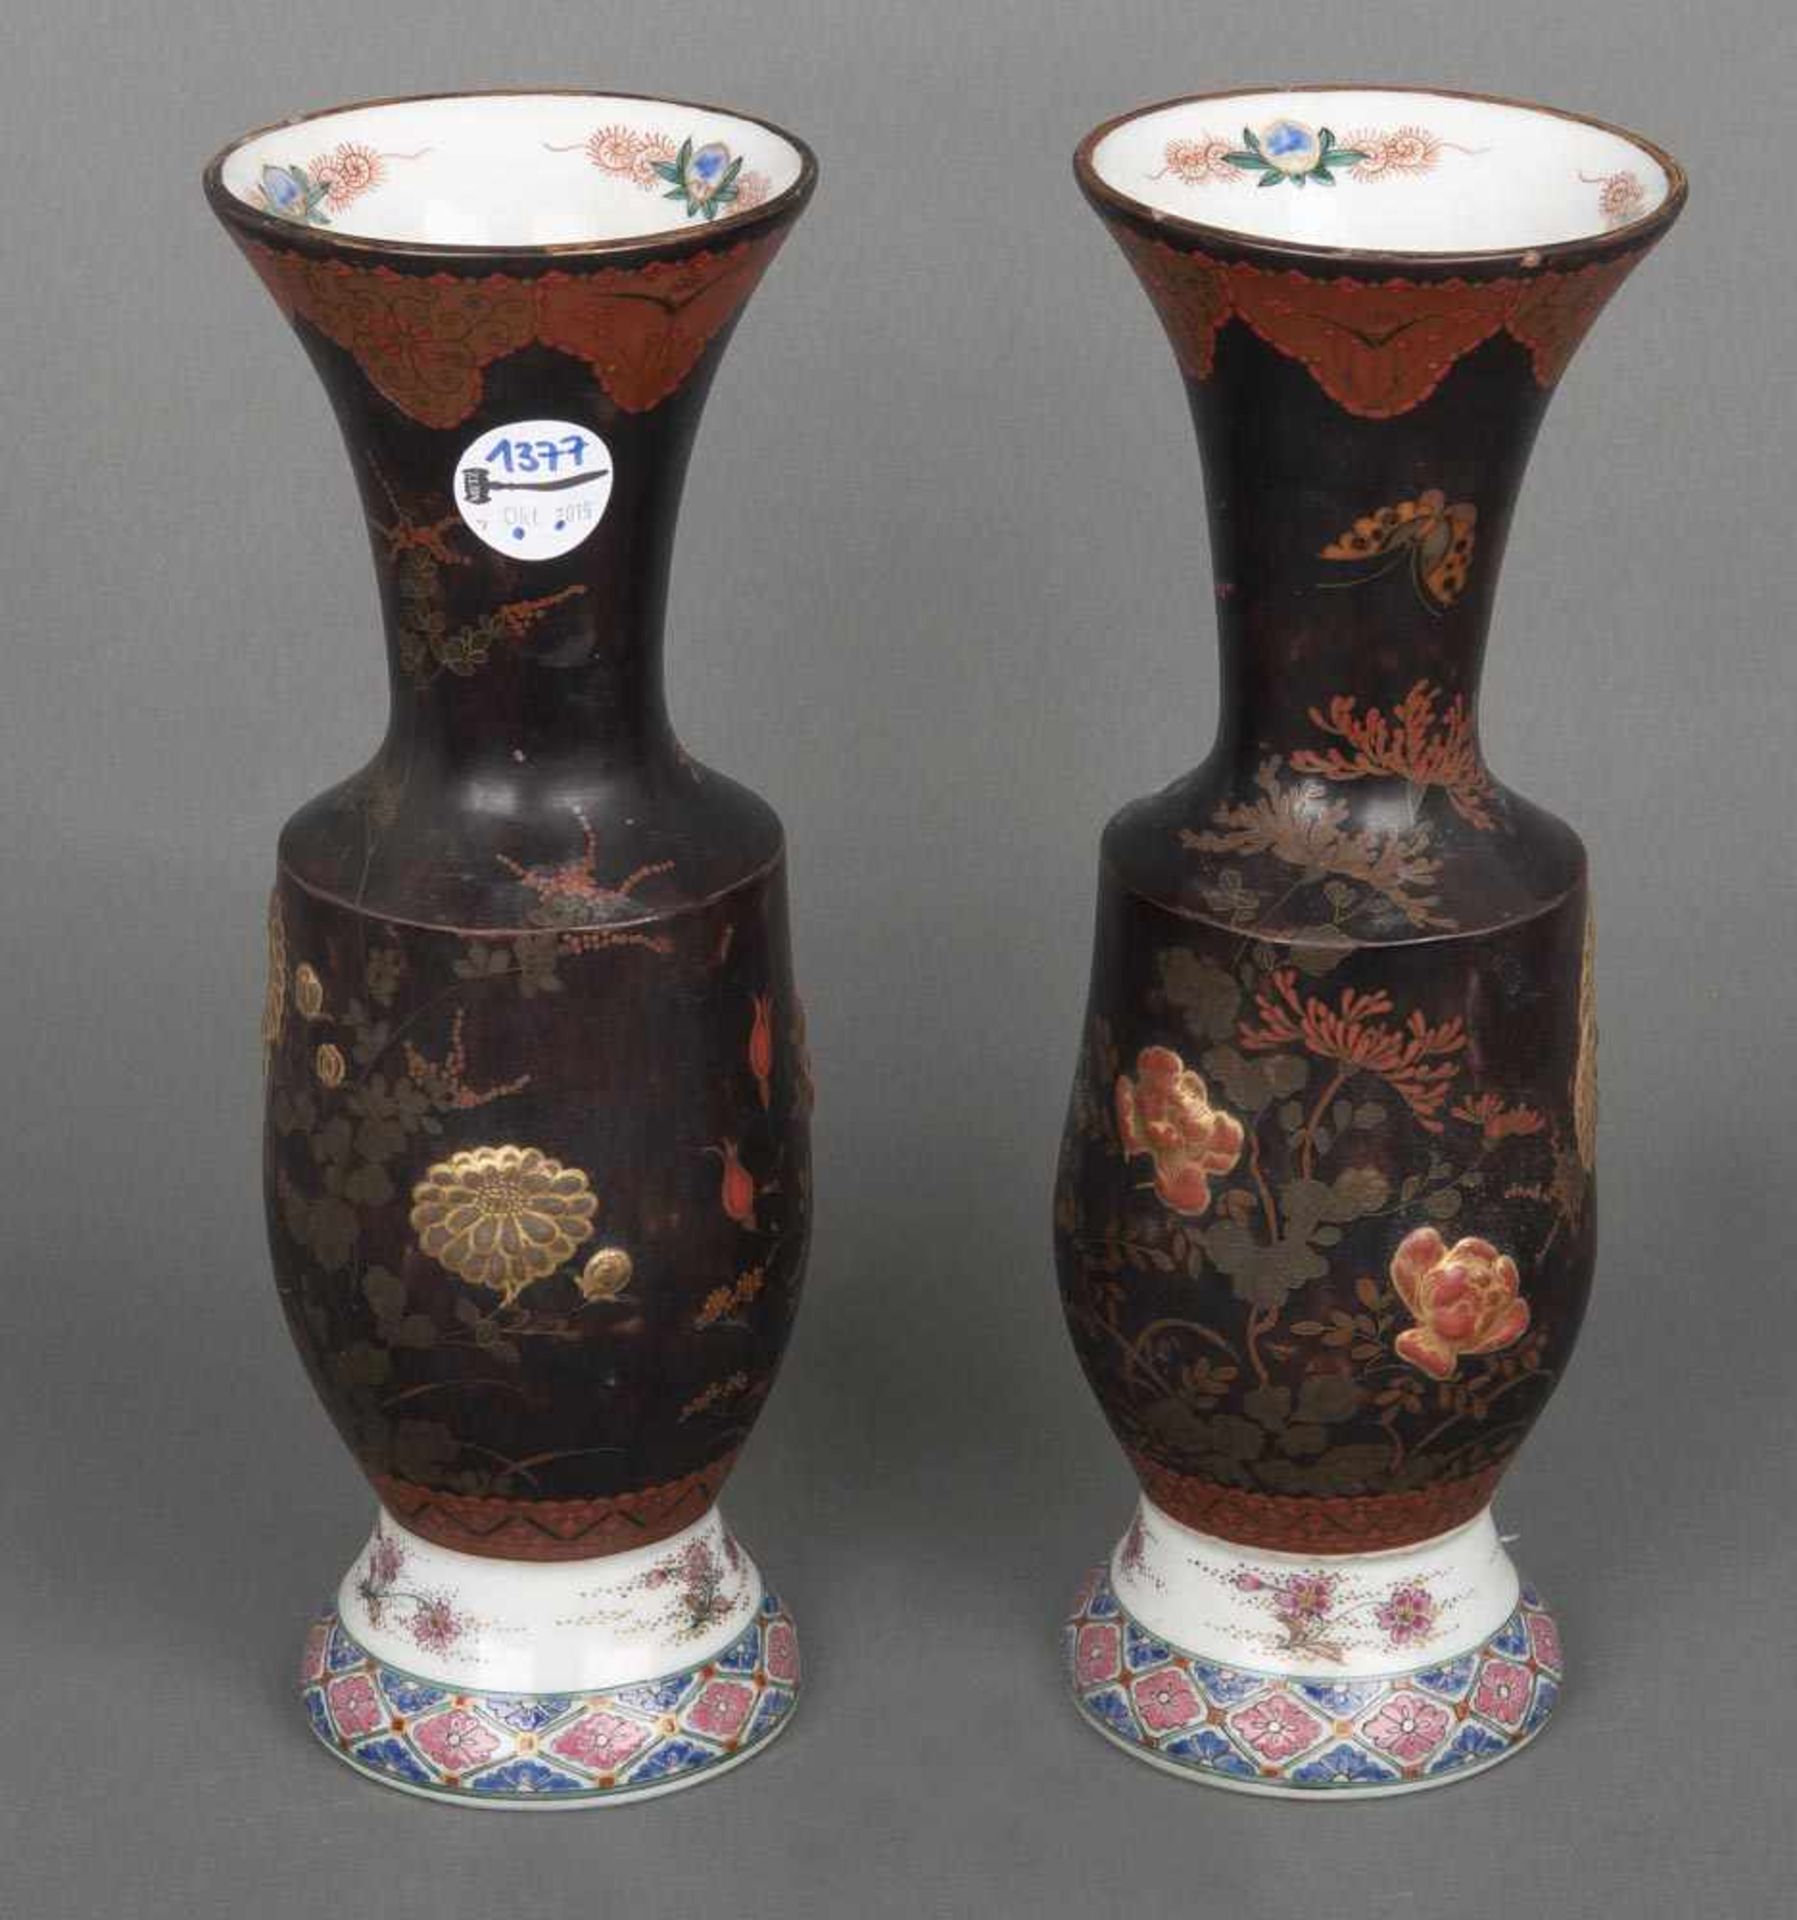 Paar Vasen. China. Porzellan, bunt bemalt, je H=33 cm. (min. best.)- - -25.00 % buyer's premium on